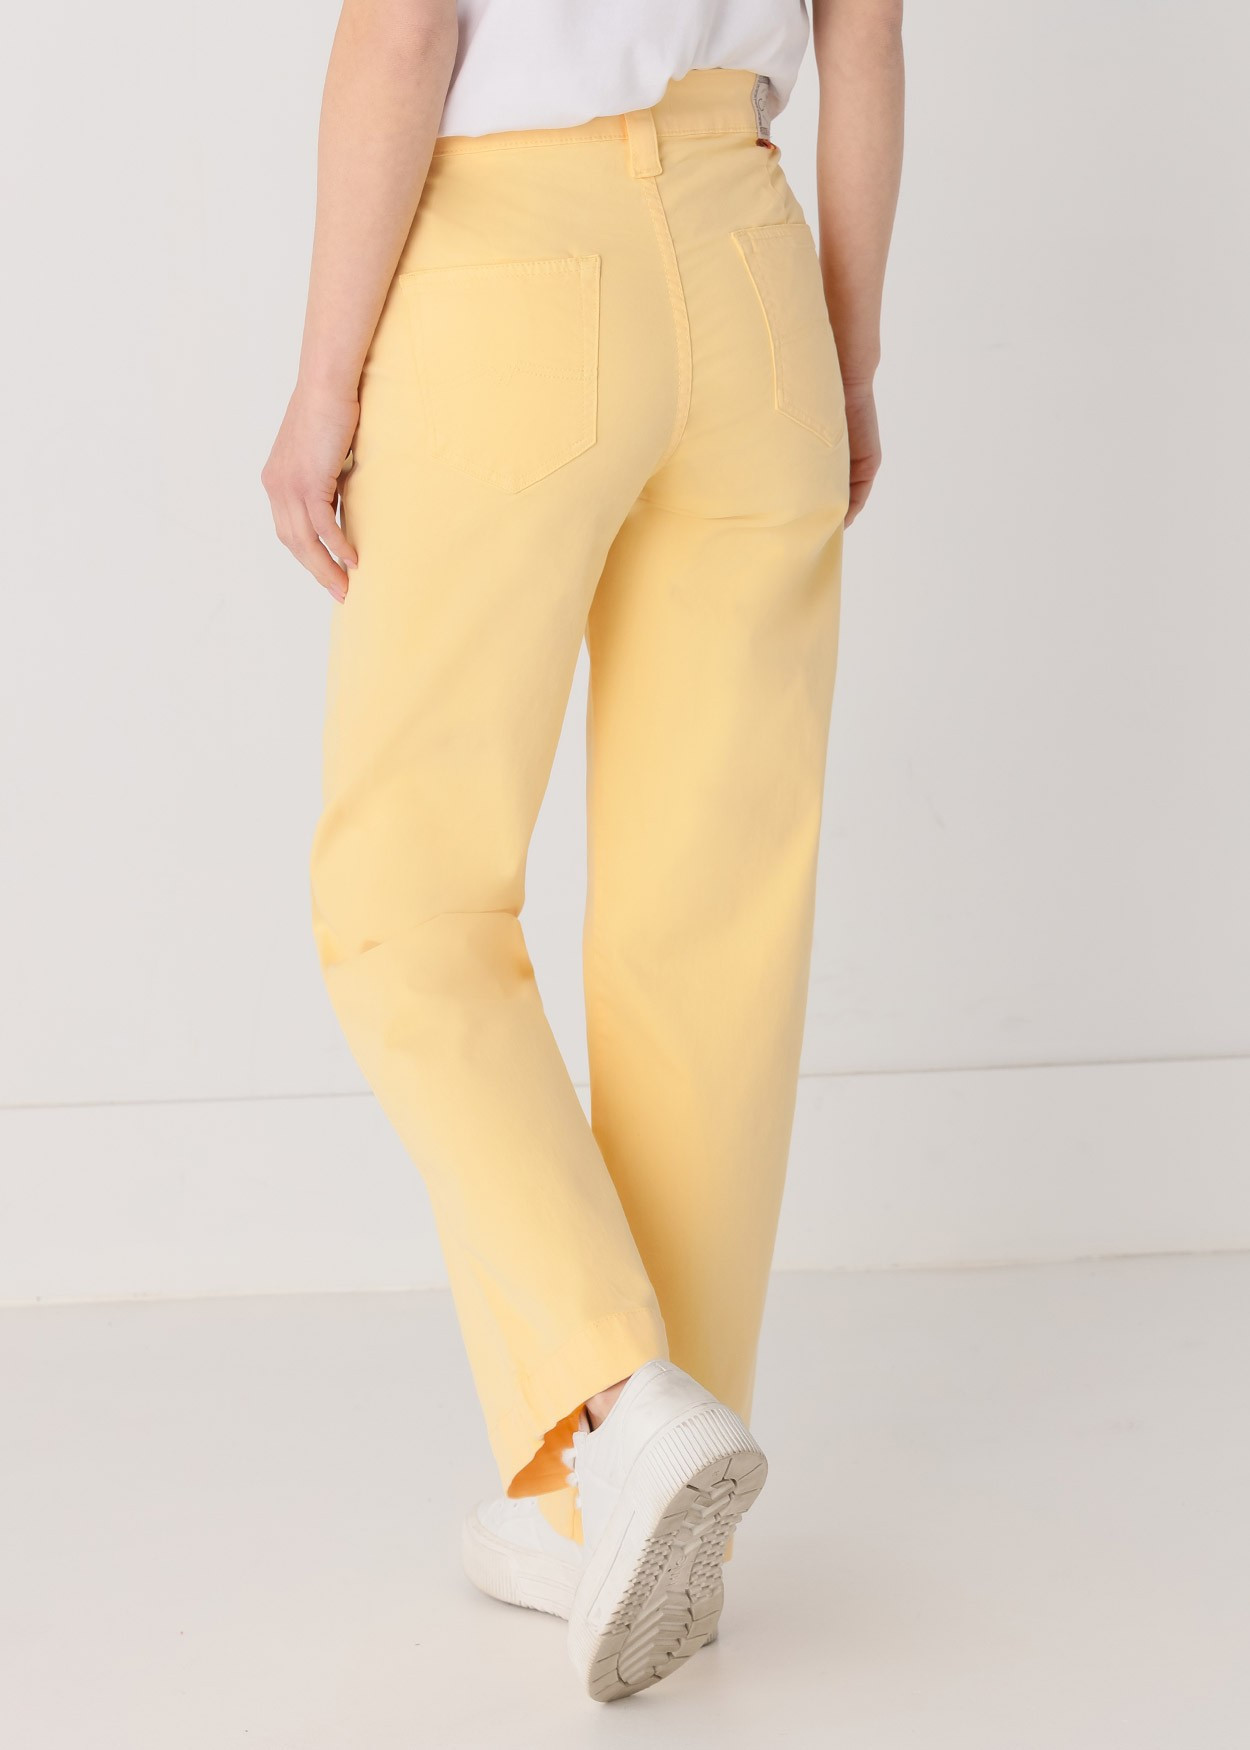 Pantalon Large | Olivia-Nectar Cimarron